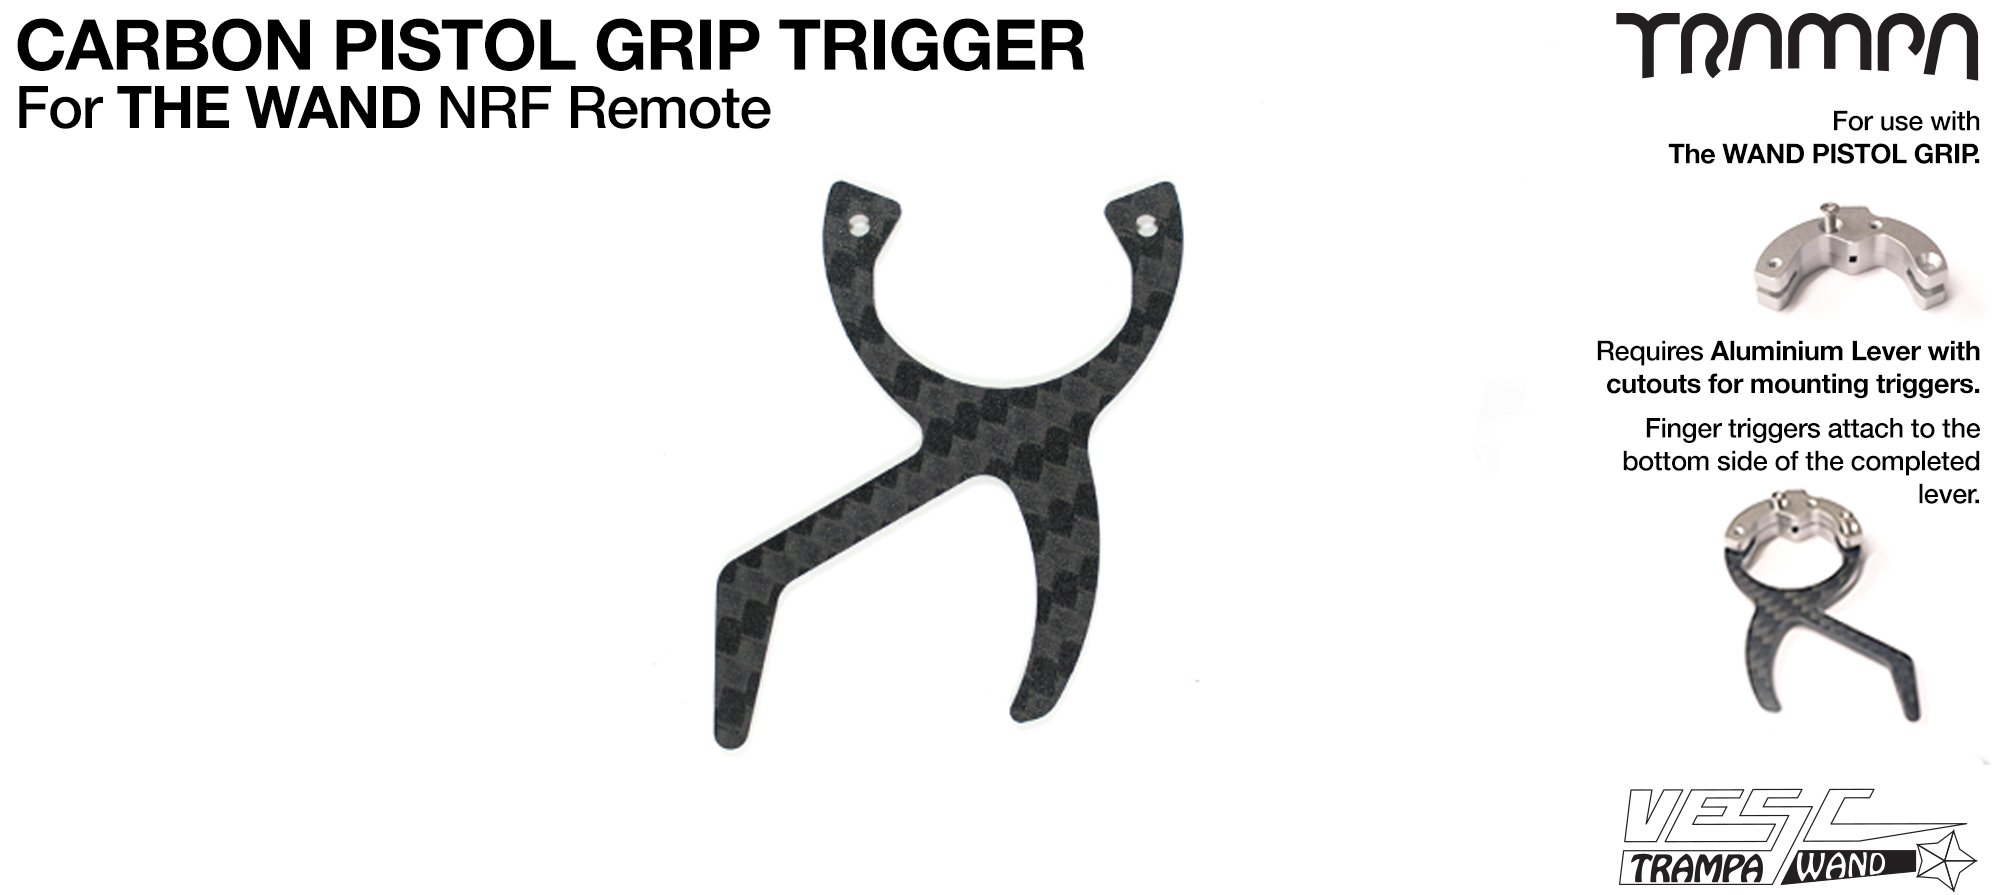 WAND - Pistol Grip Carbon Trigger